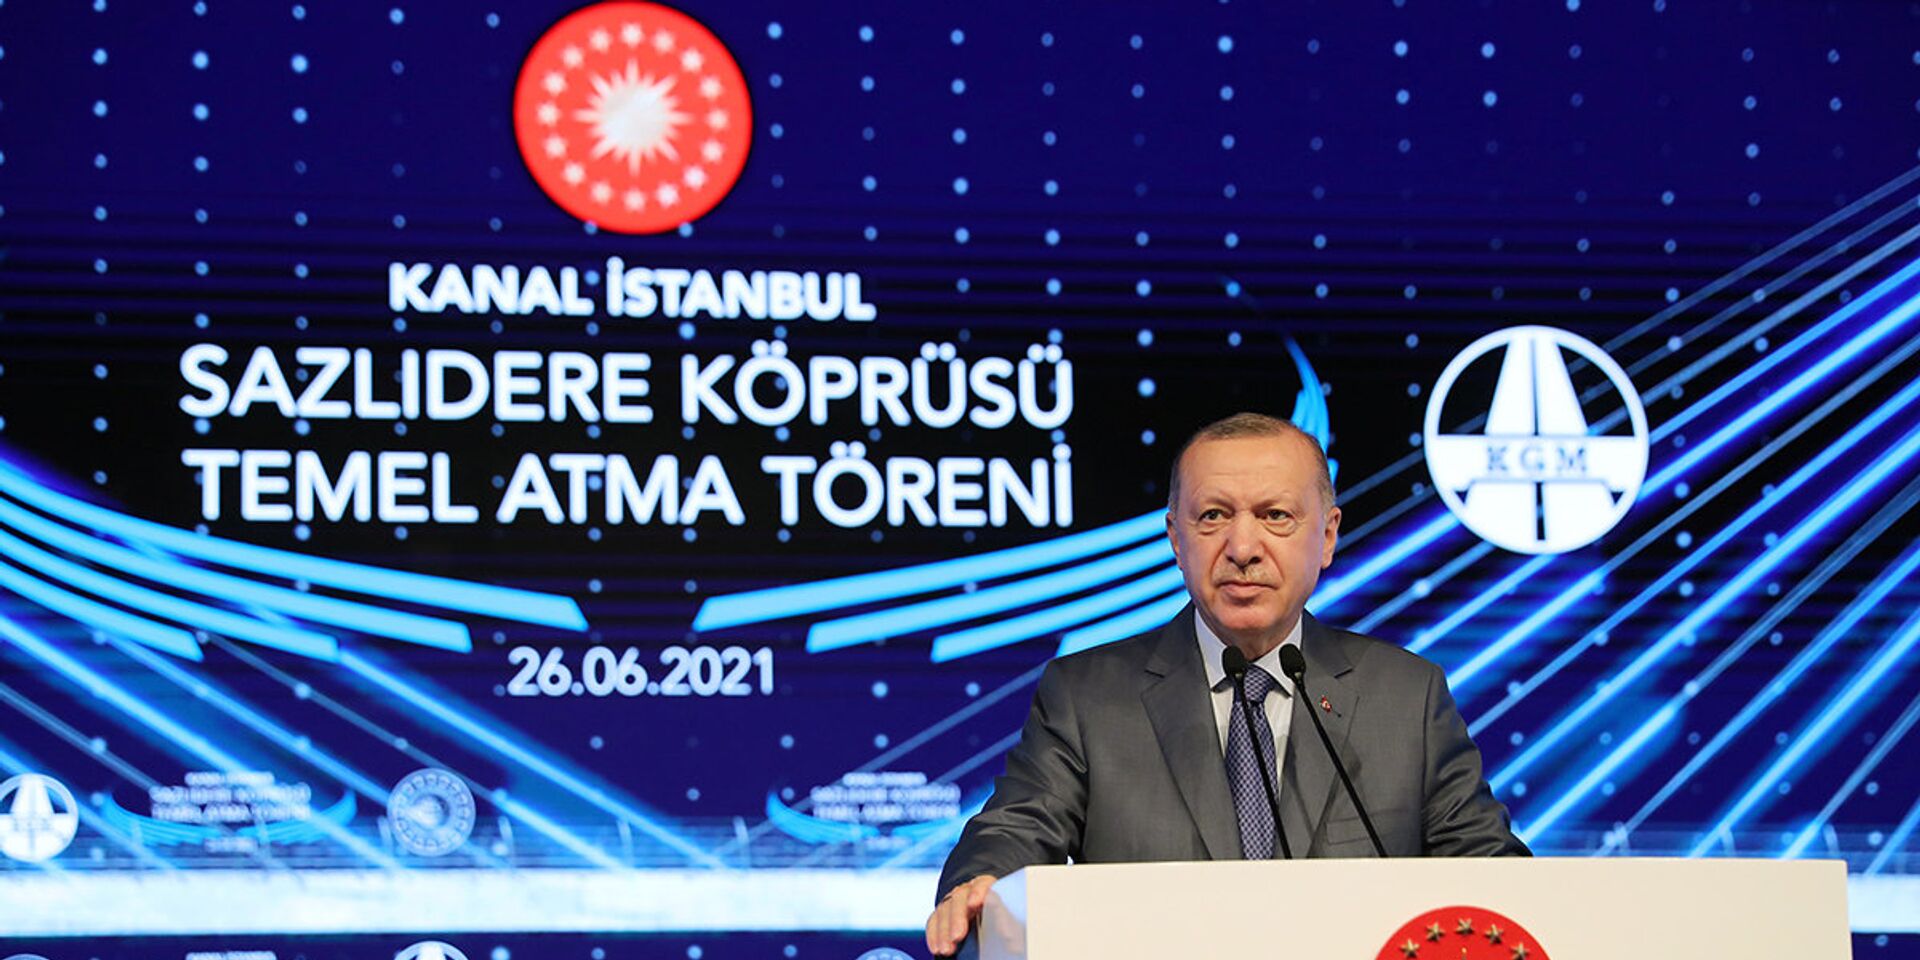 Президент Турции Тайип Эрдоган выступает во время церемонии - ИноСМИ, 1920, 28.06.2021